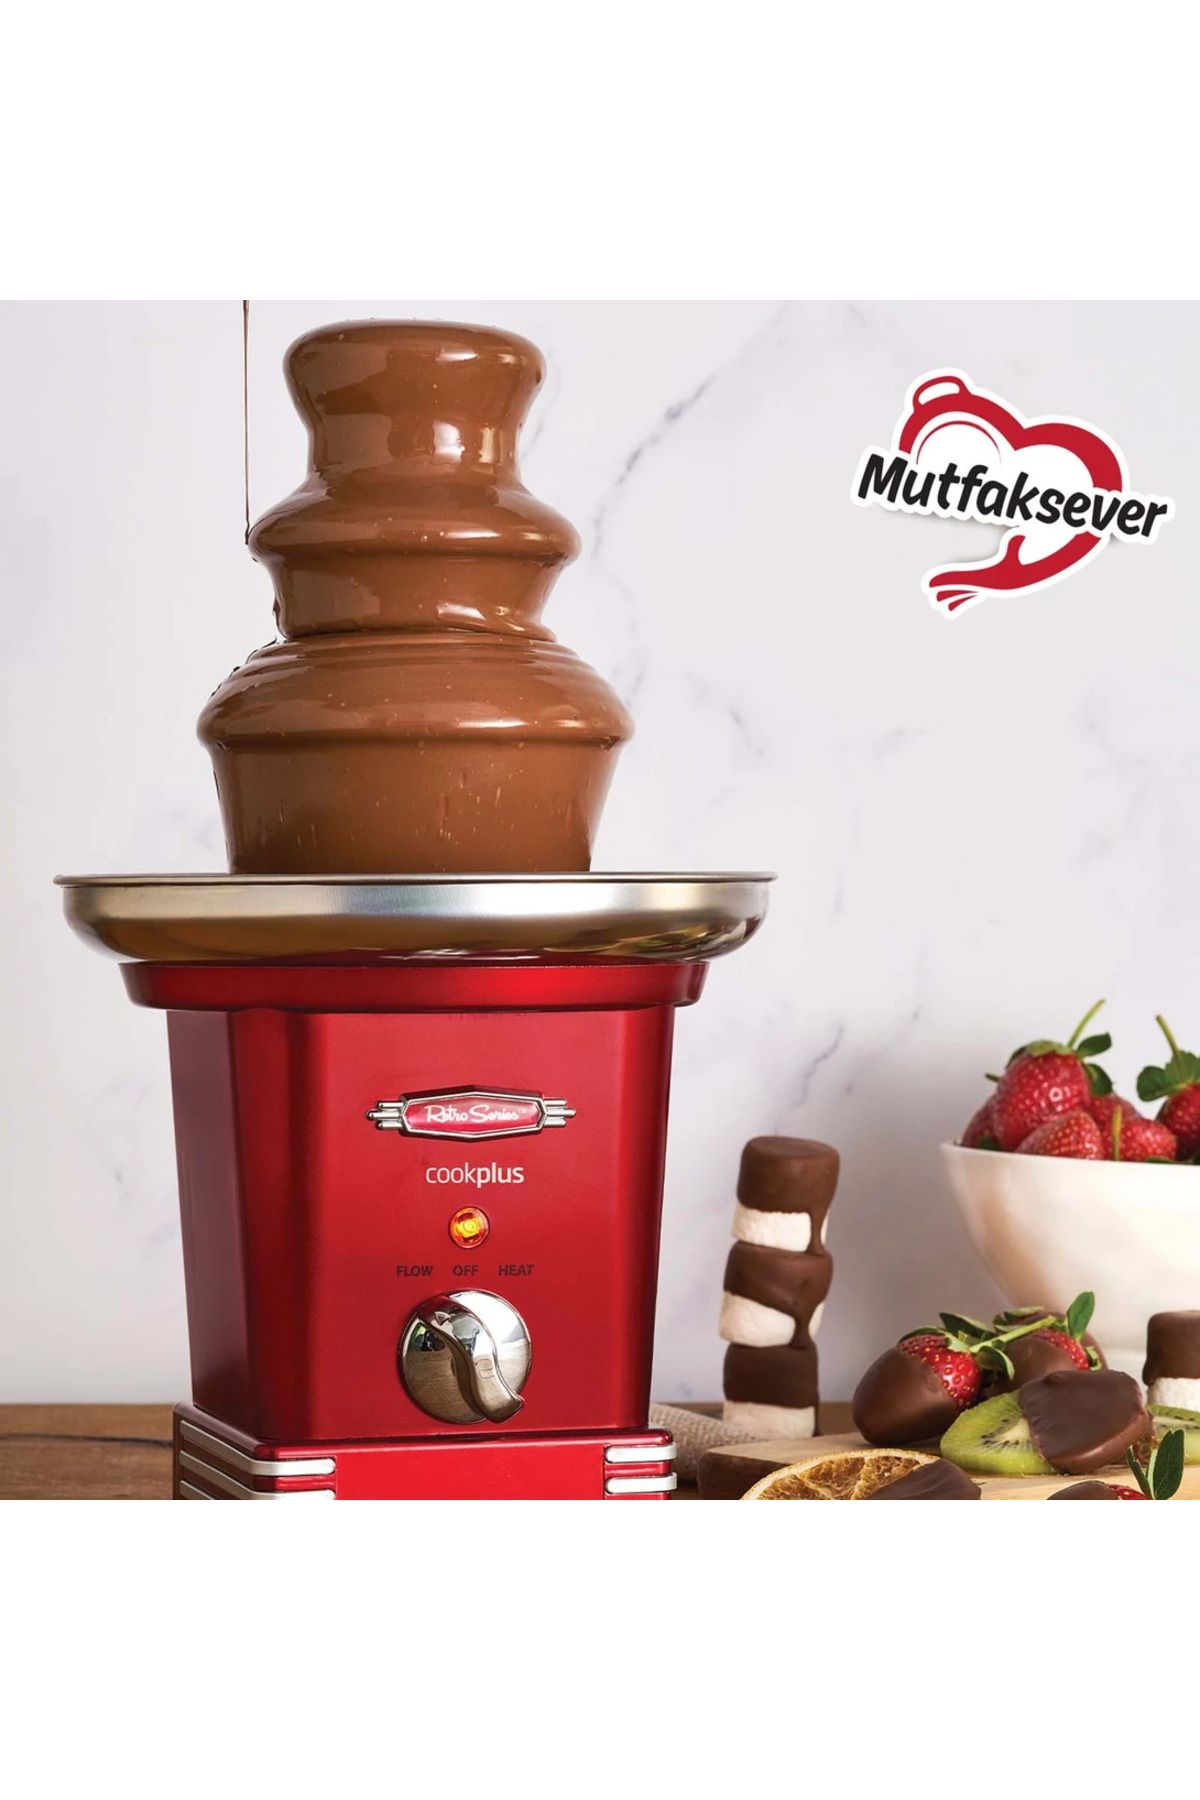 Karaca Cookplus Mutfaksever Fondü Makinesi Ve Çikolata Şelalesi